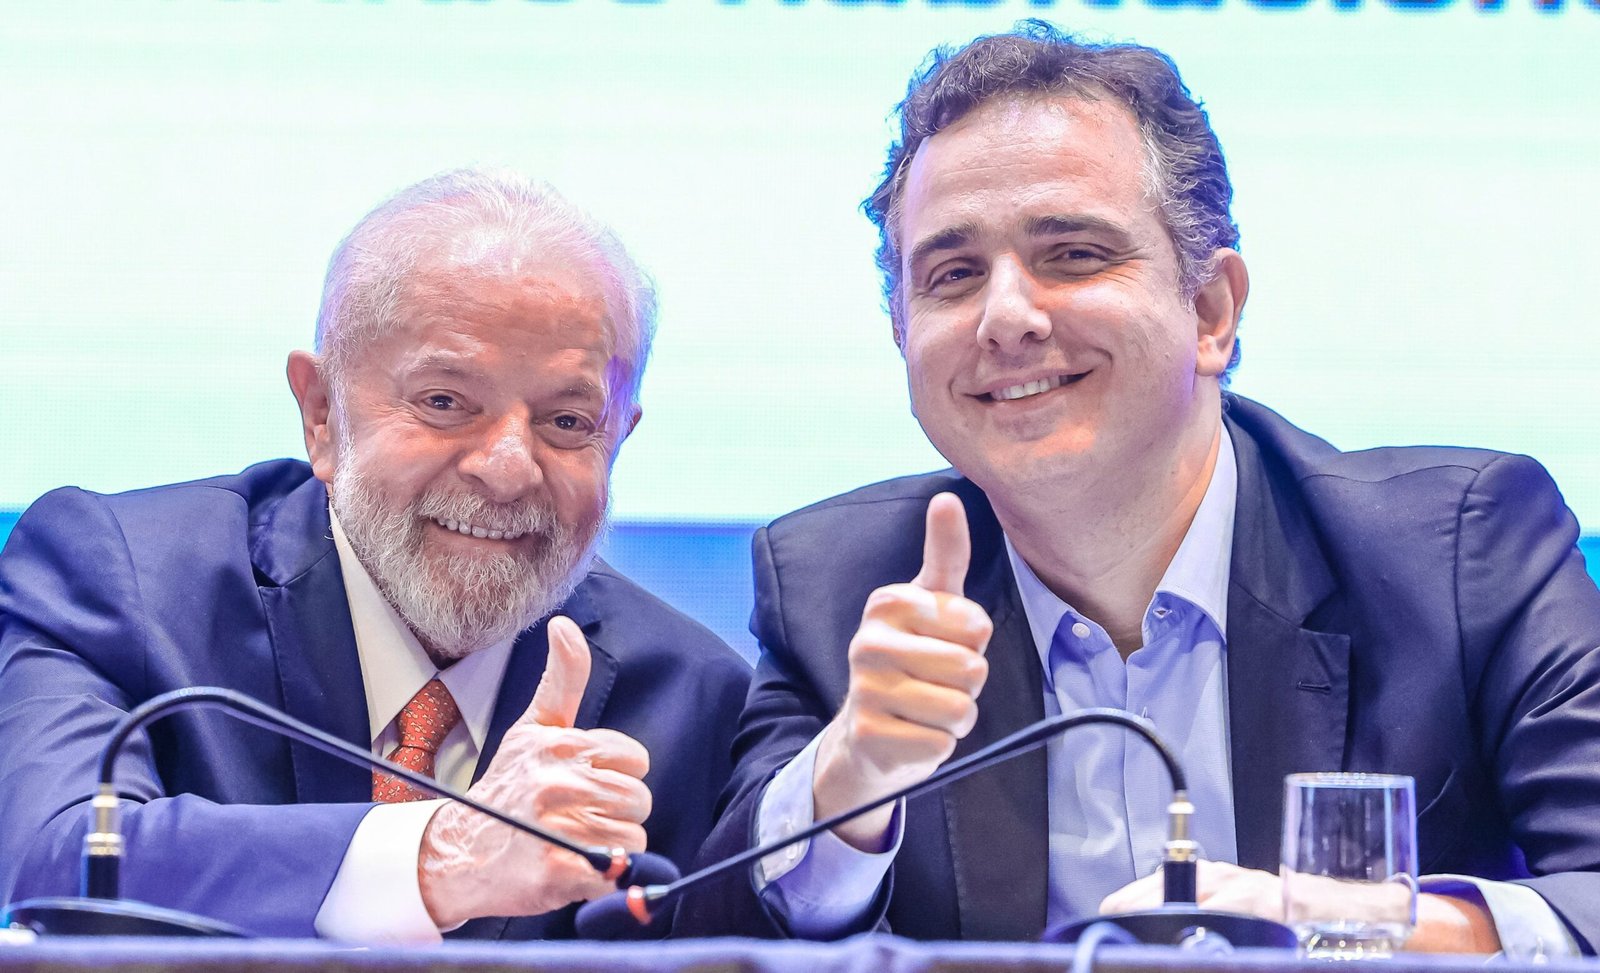 Em reunião, Lula defende Pacheco após crítica de governistas